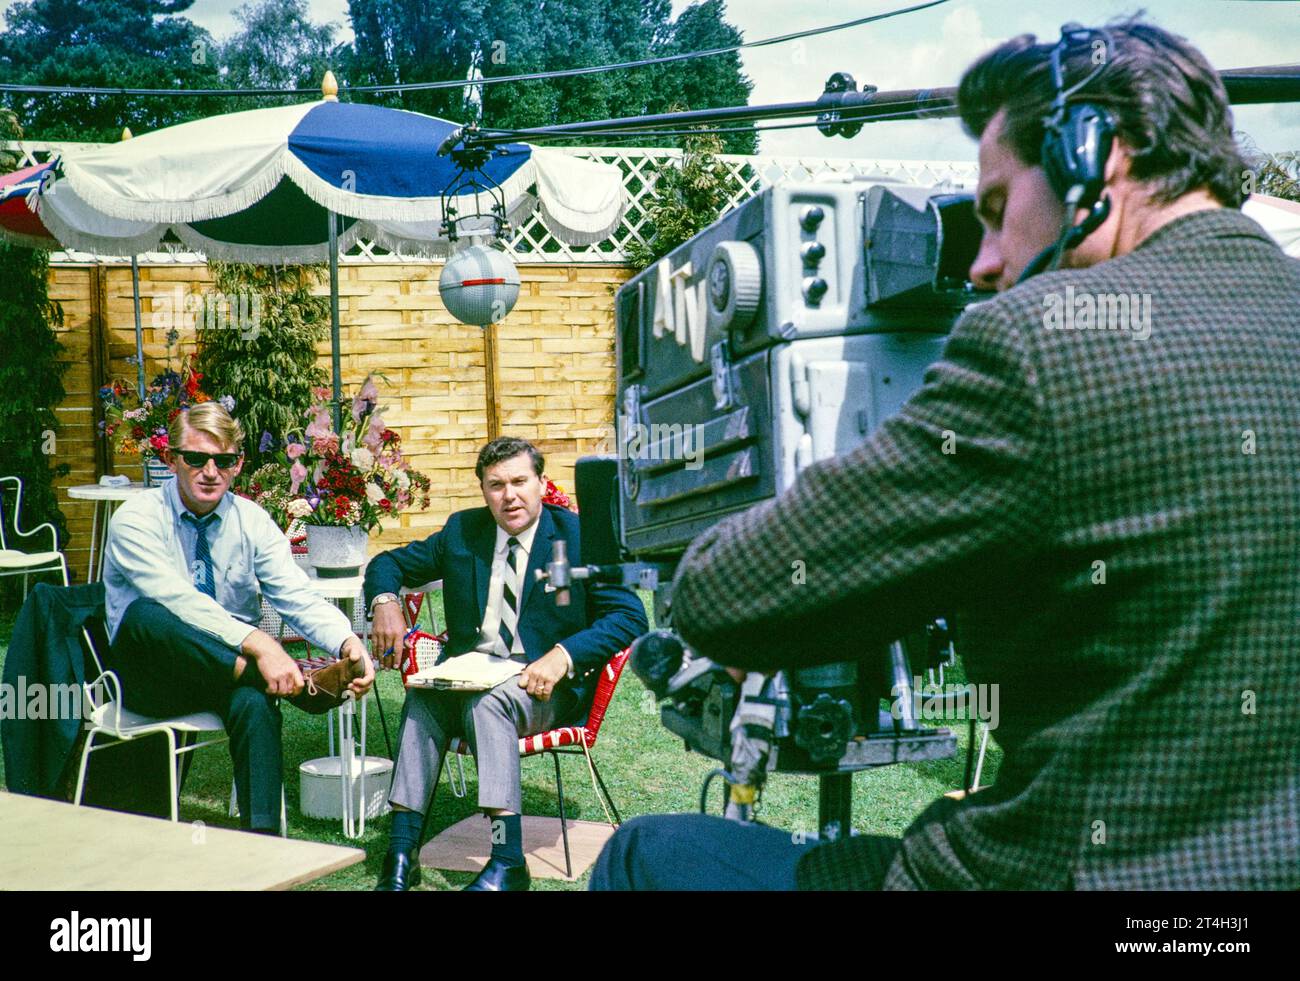 ATV TV-Fernsehen ITV Outside Broadcast, Wimbledon Tennis Turnier, England, Großbritannien 1967 Dickie Davies mit dem australischen Tennisspieler Lew Hoad Kameramann Jeff Joyce. Foto von Alan 'Taffy' Harries Stockfoto